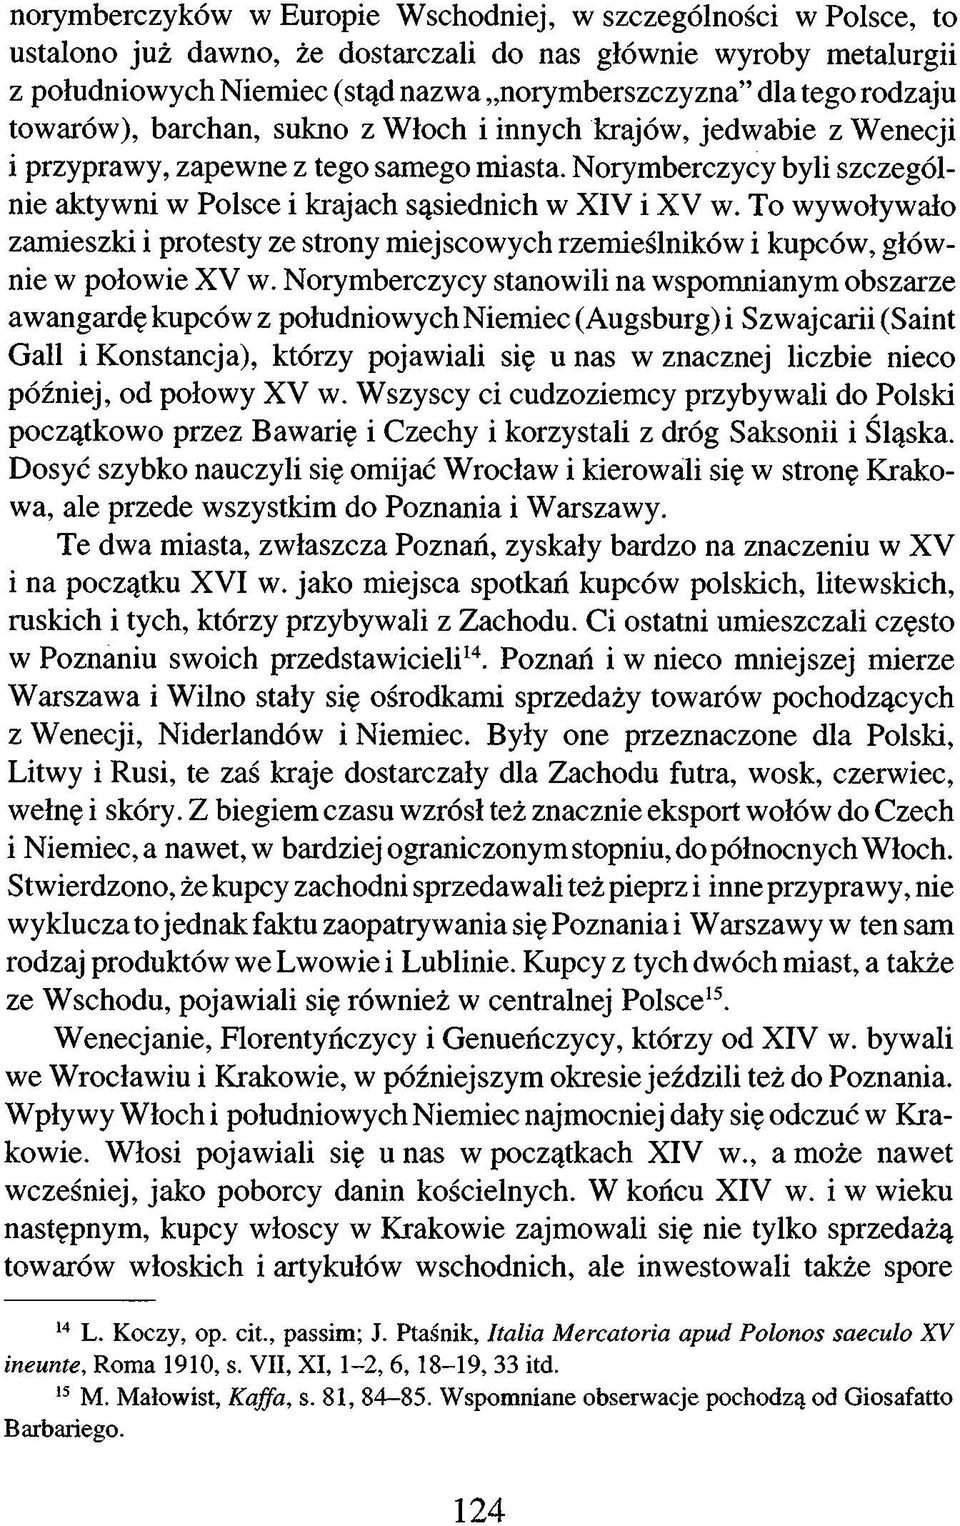 Norymberczycy byli szczególnie aktywni w Polsce i krajach sąsiednich w XIV i XV w. To wywoływało zamieszki i protesty ze strony miejscowych rzemieślników i kupców, głównie w połowie XV w.